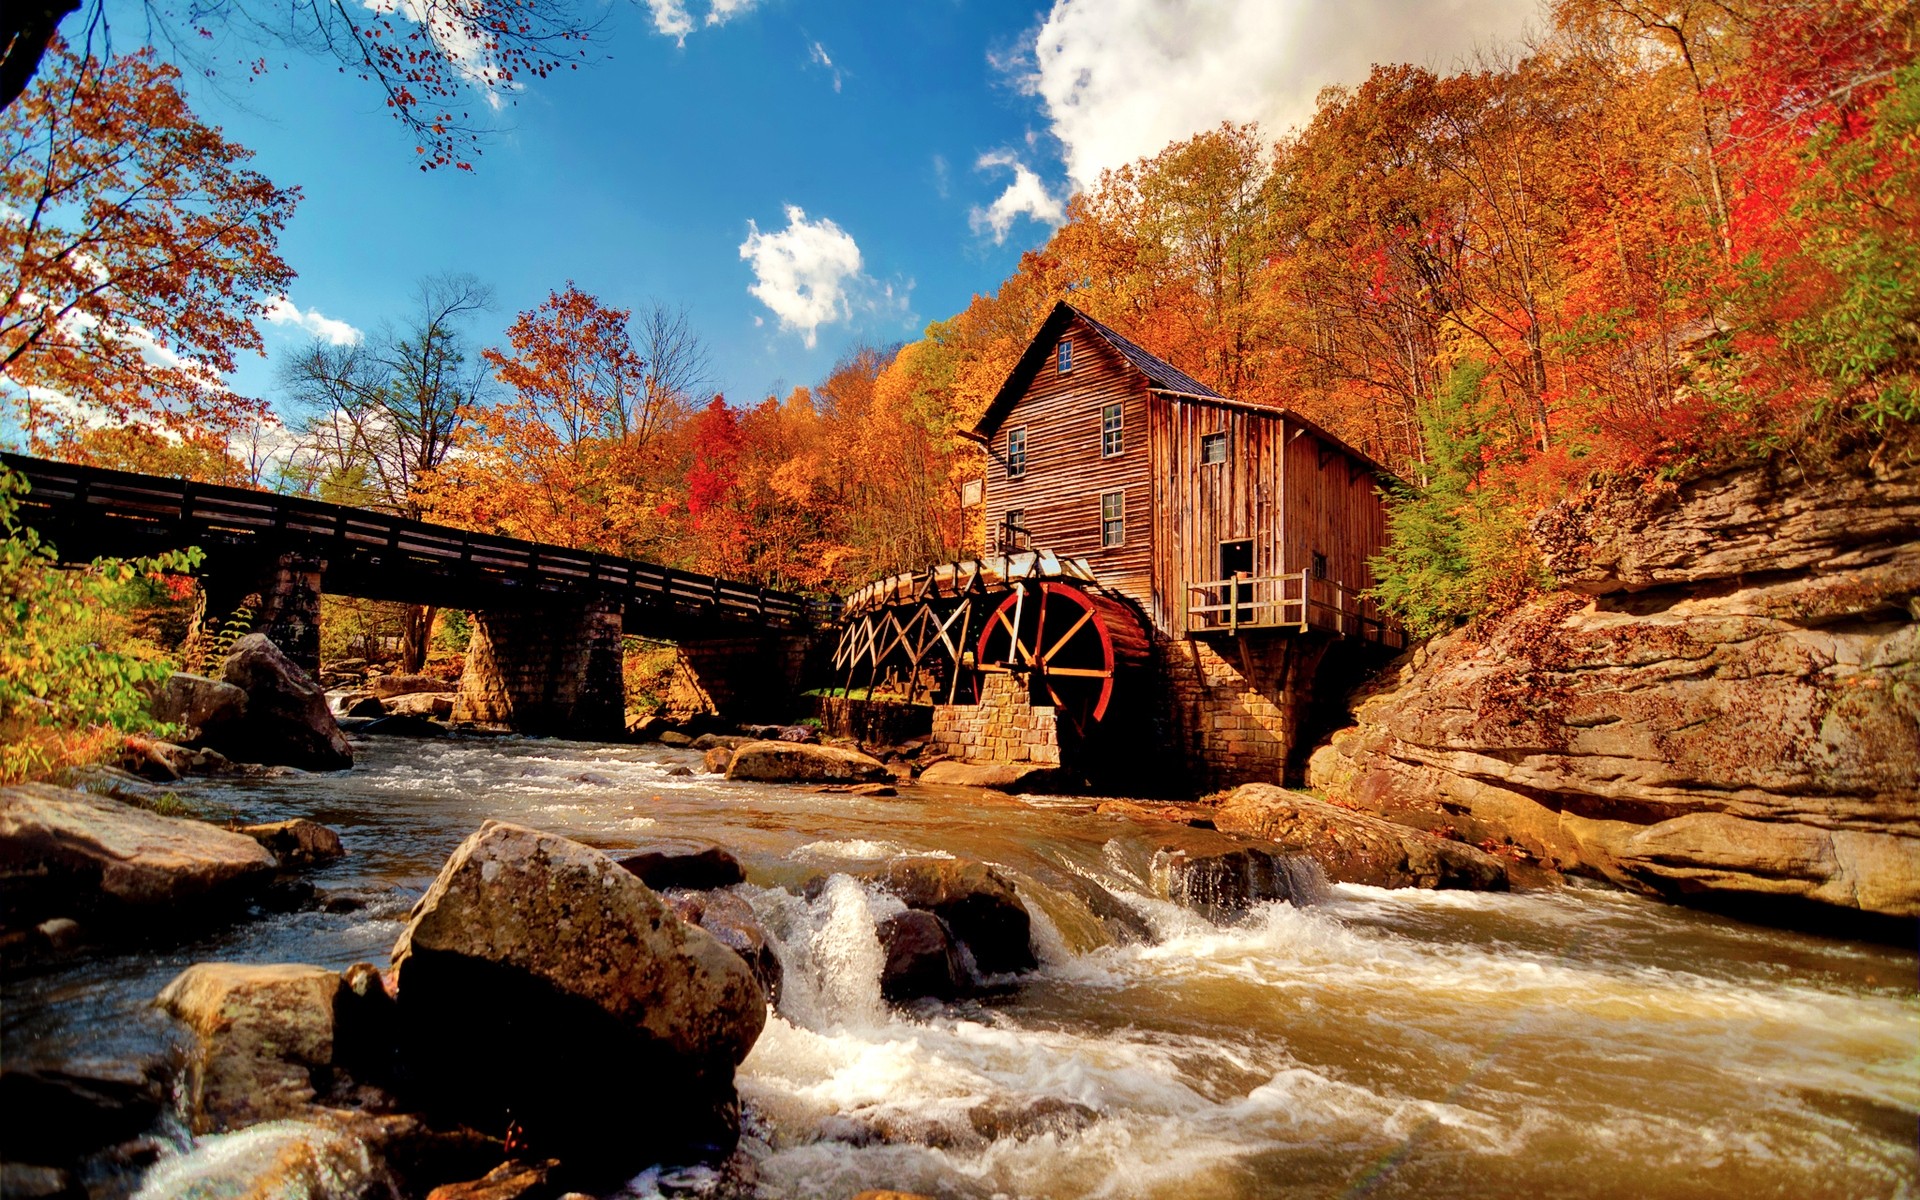 осень воды река осень древесины мост поток путешествия пейзаж природа на открытом воздухе водопад живописный дерево водяная мельница коттедж